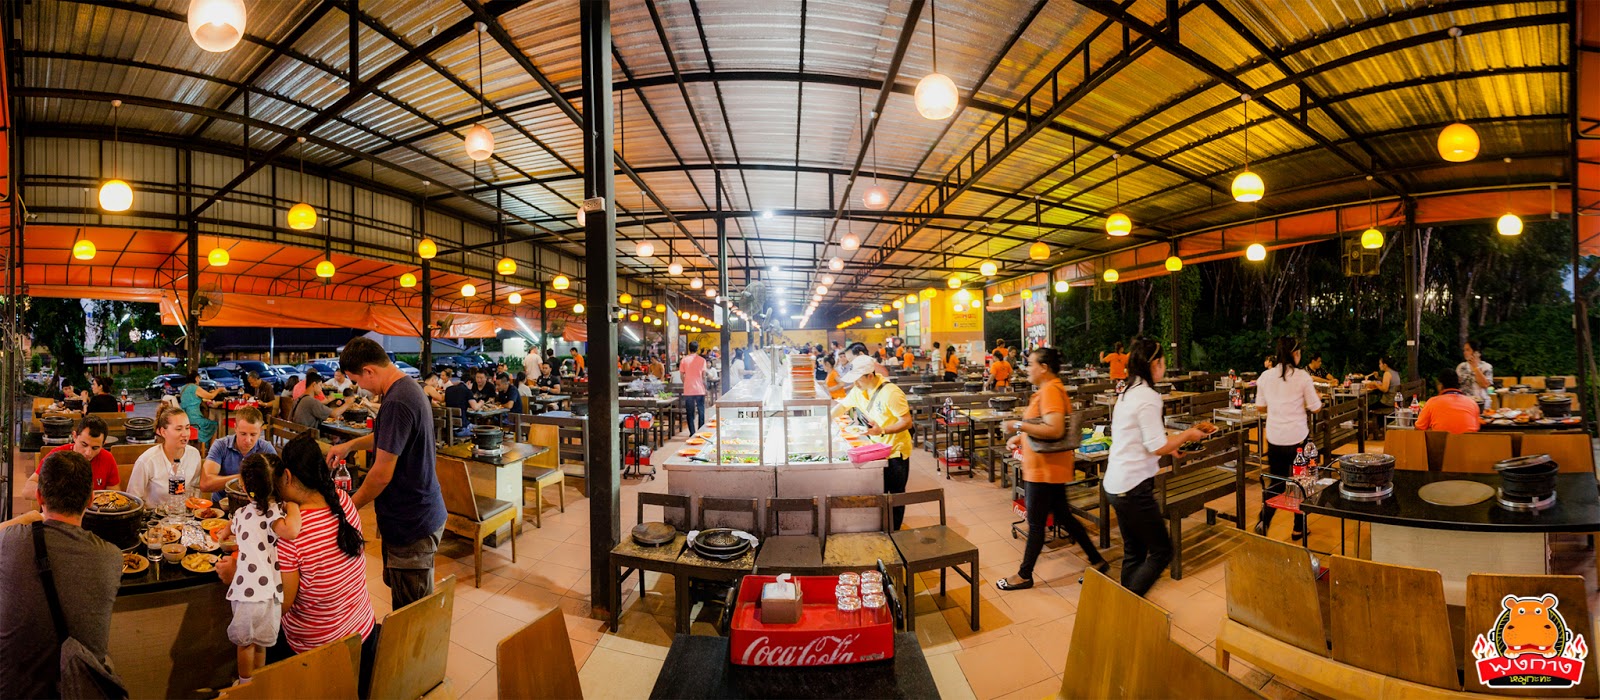 หมูกะทะพุงกาง ภูเก็ต Phung-kang BBQ buffet Phuket | แผนที่ ทริป การ